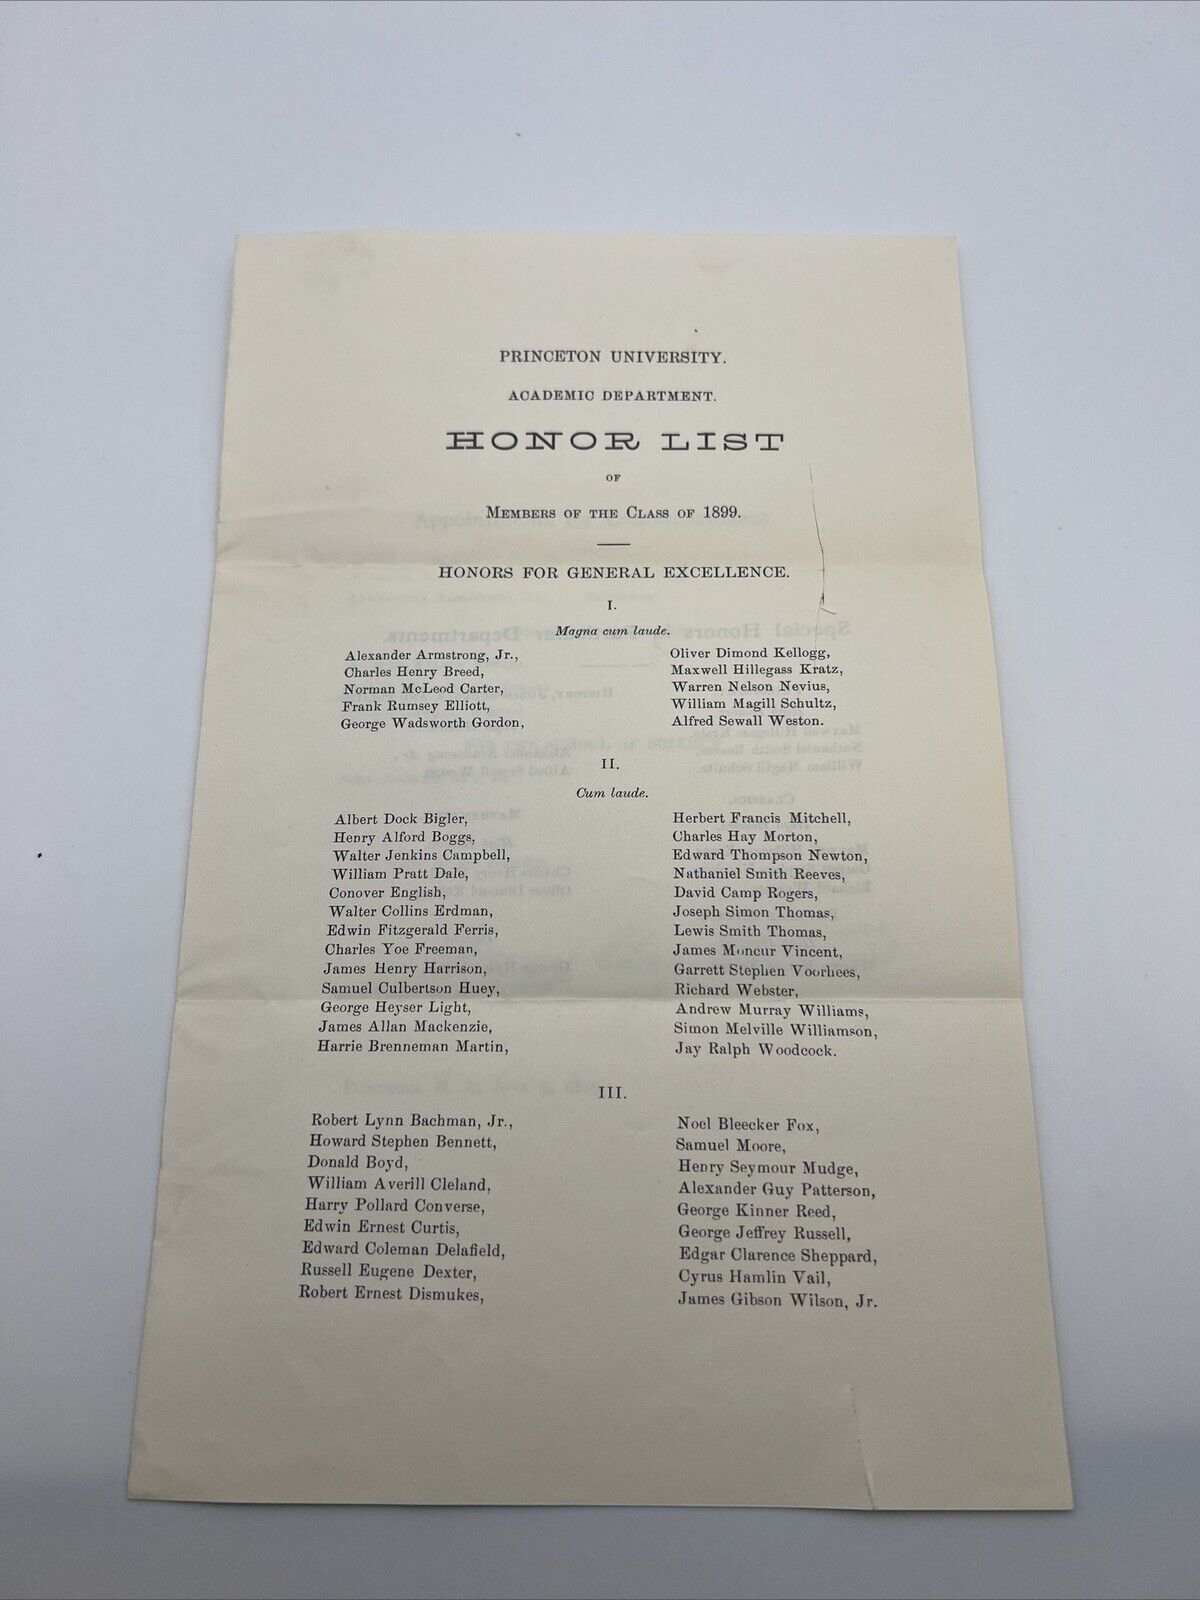 ANTIQUE 1899 CLASS PRINCETON UNIVERSITY ACADEMIC DEPARTMENT HONOR LIST